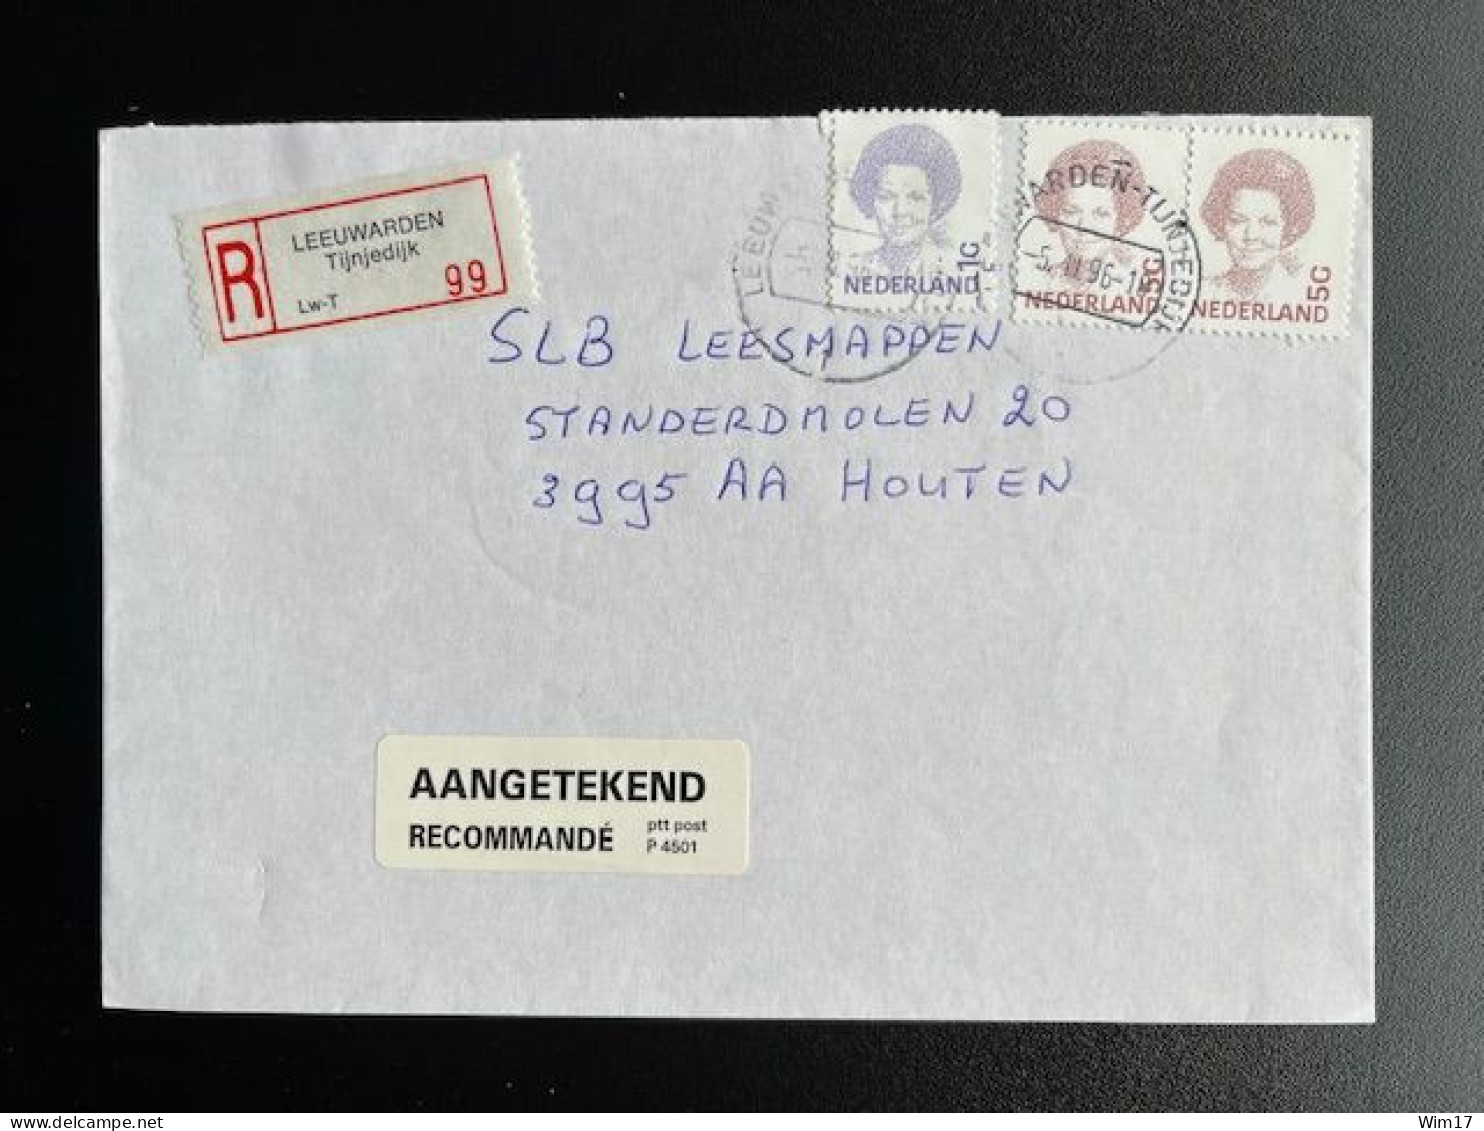 NETHERLANDS 1996 REGISTERED LETTER LEEUWARDEN TIJNJEDIJK TO HOUTEN 05-03-1996 NEDERLAND AANGETEKEND - Covers & Documents